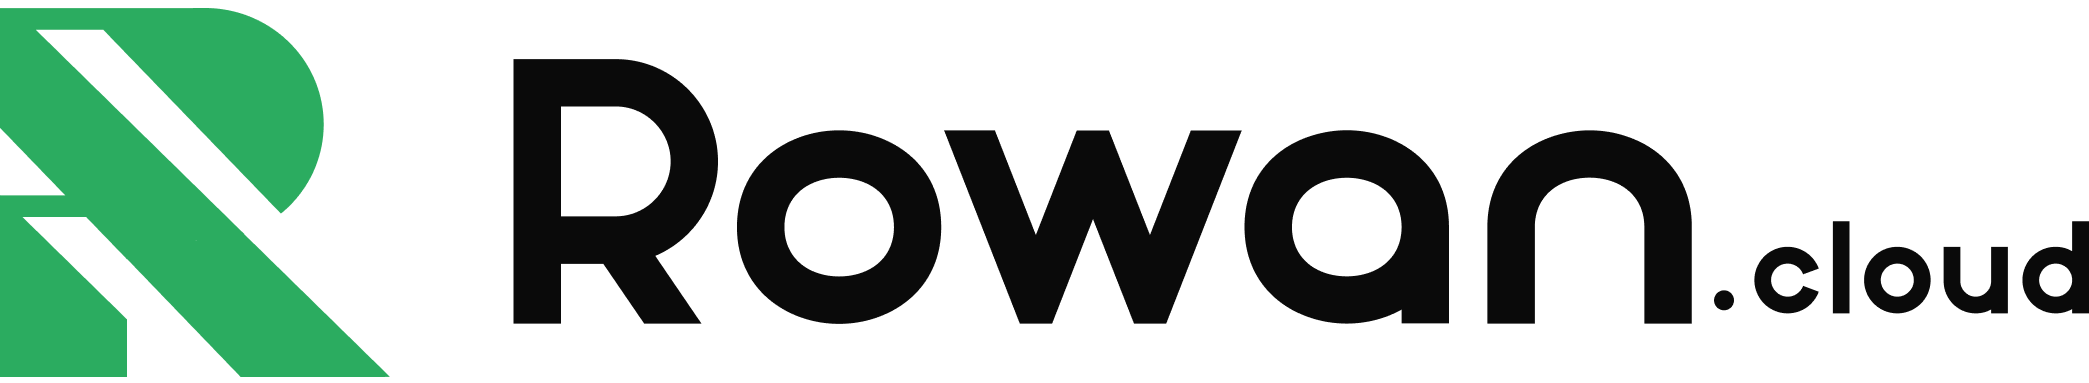 Rowan Cloud Full Logo